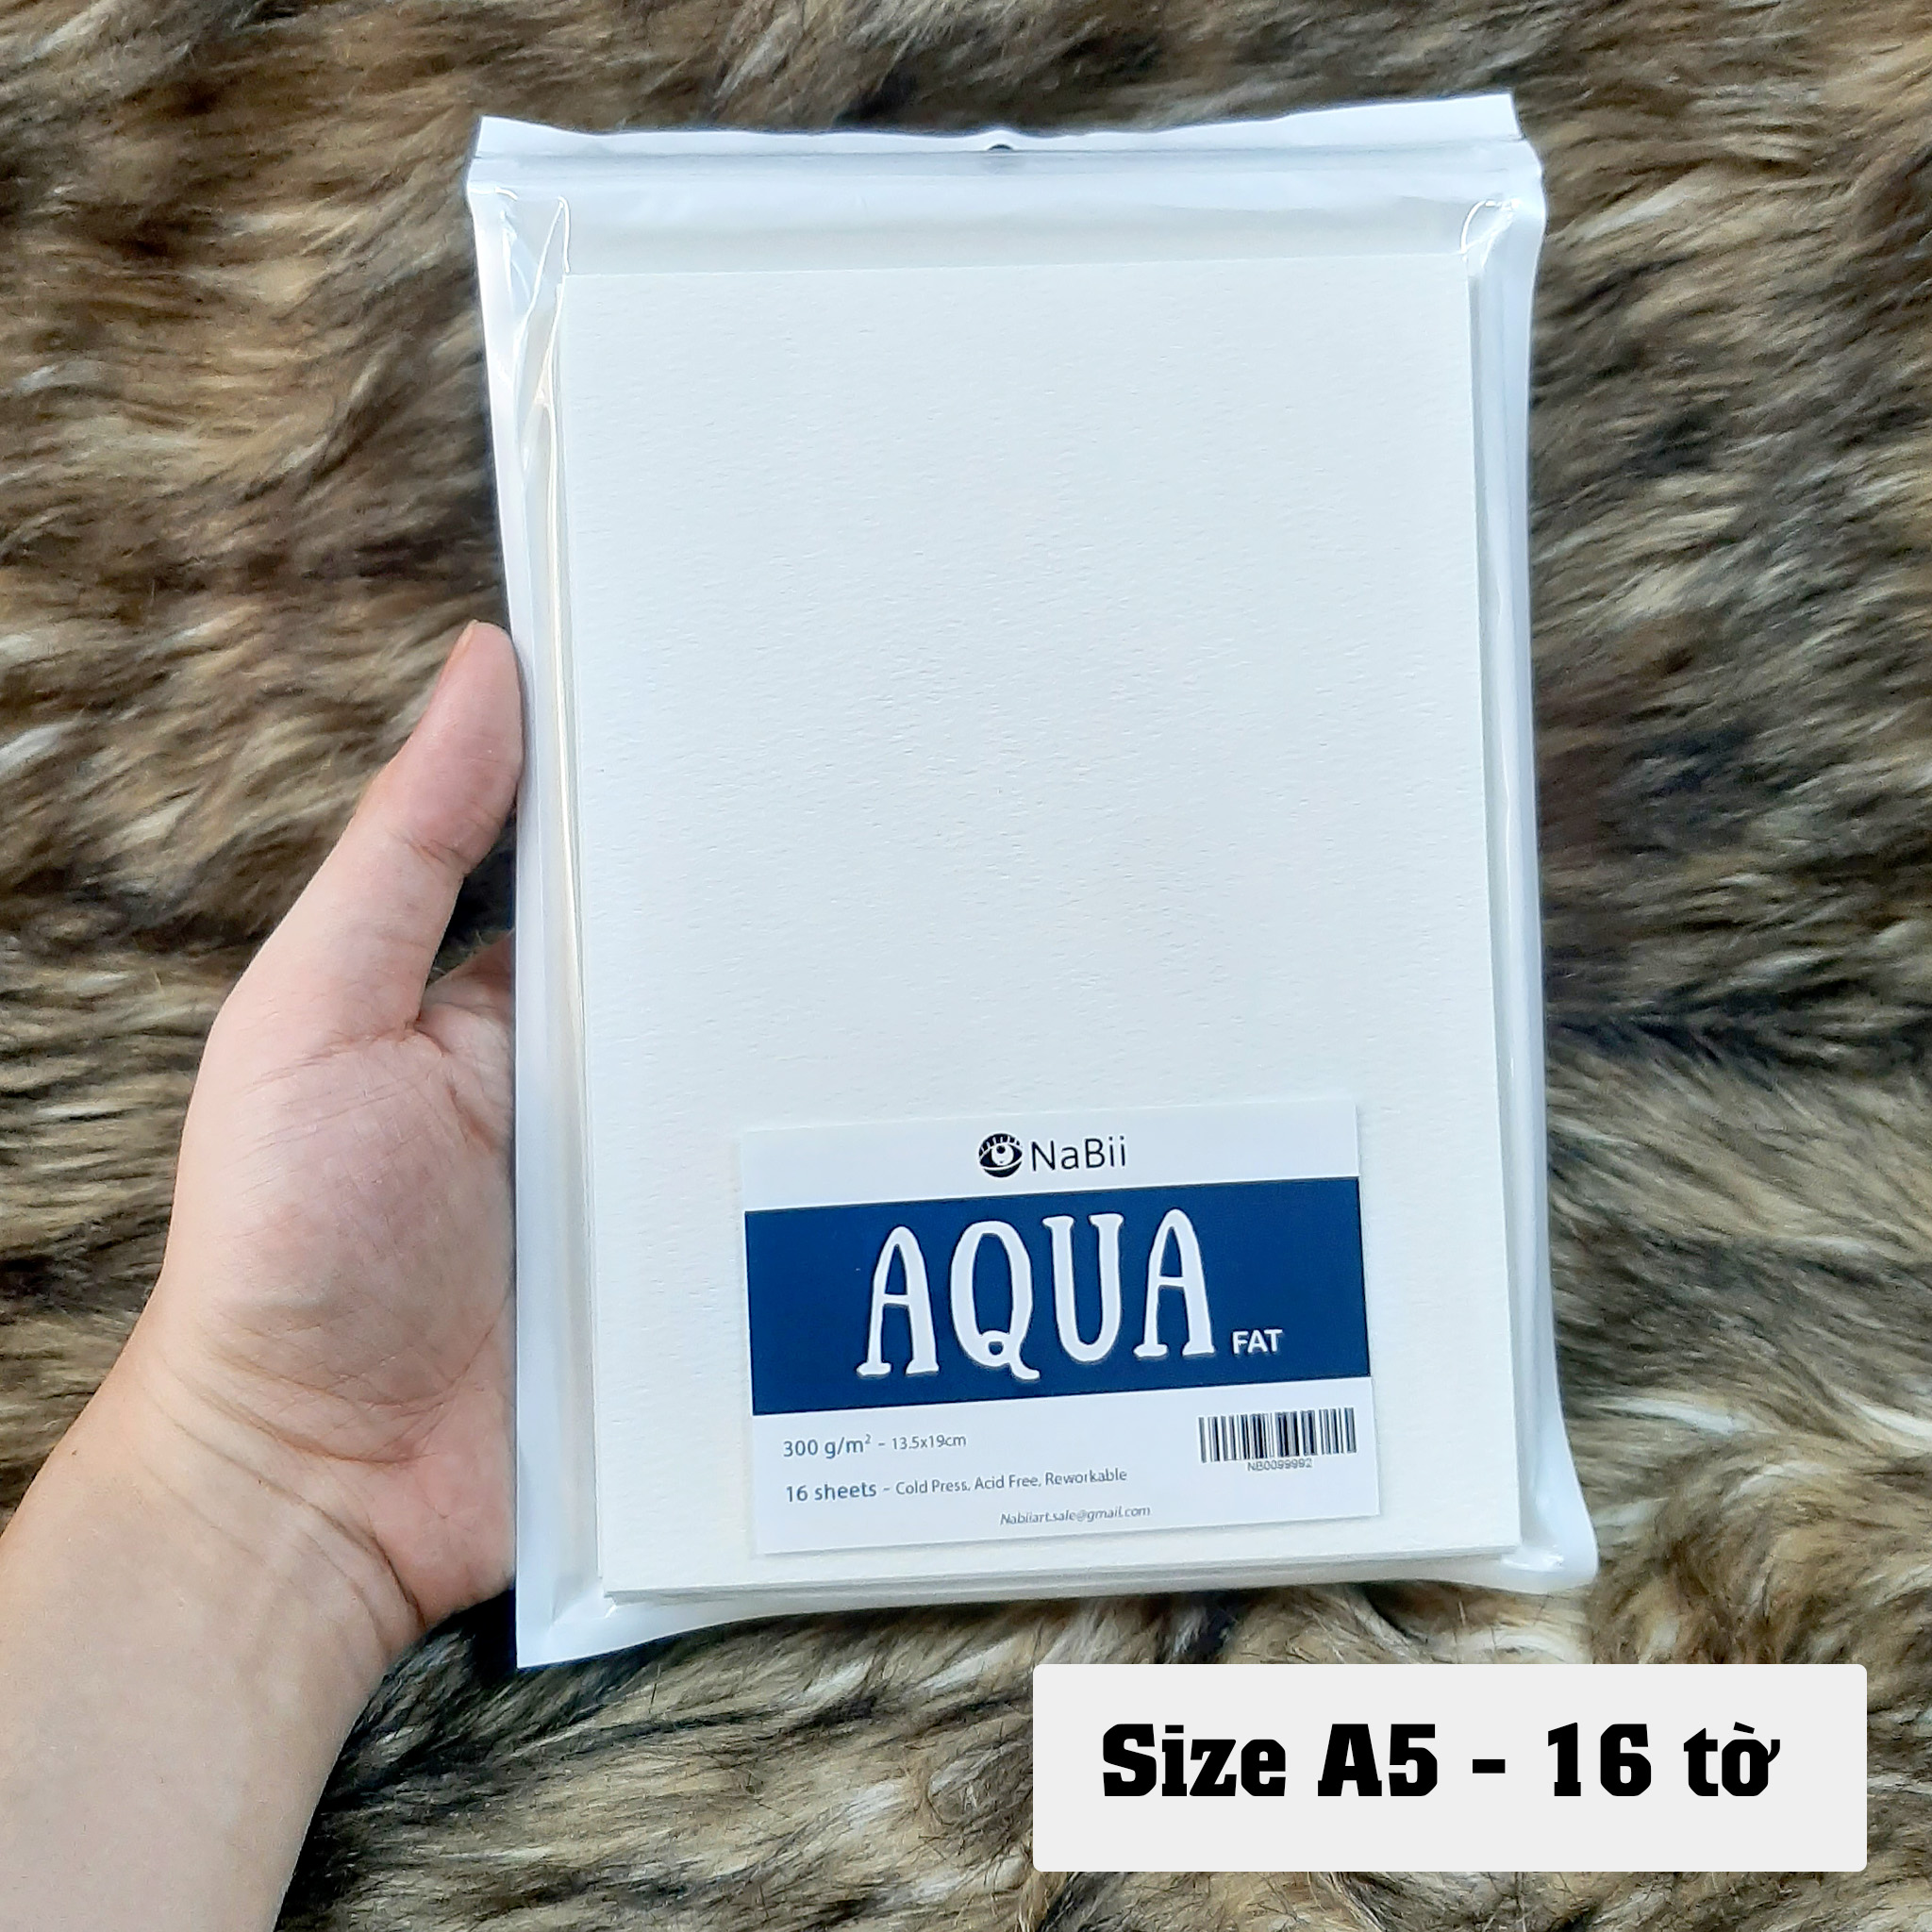 [HCM]Giấy Nabii Aqua Fat vẽ màu nước 300 gsm 16 tờ - Tập lẻ - Thương Hiệu Uy Tín -...